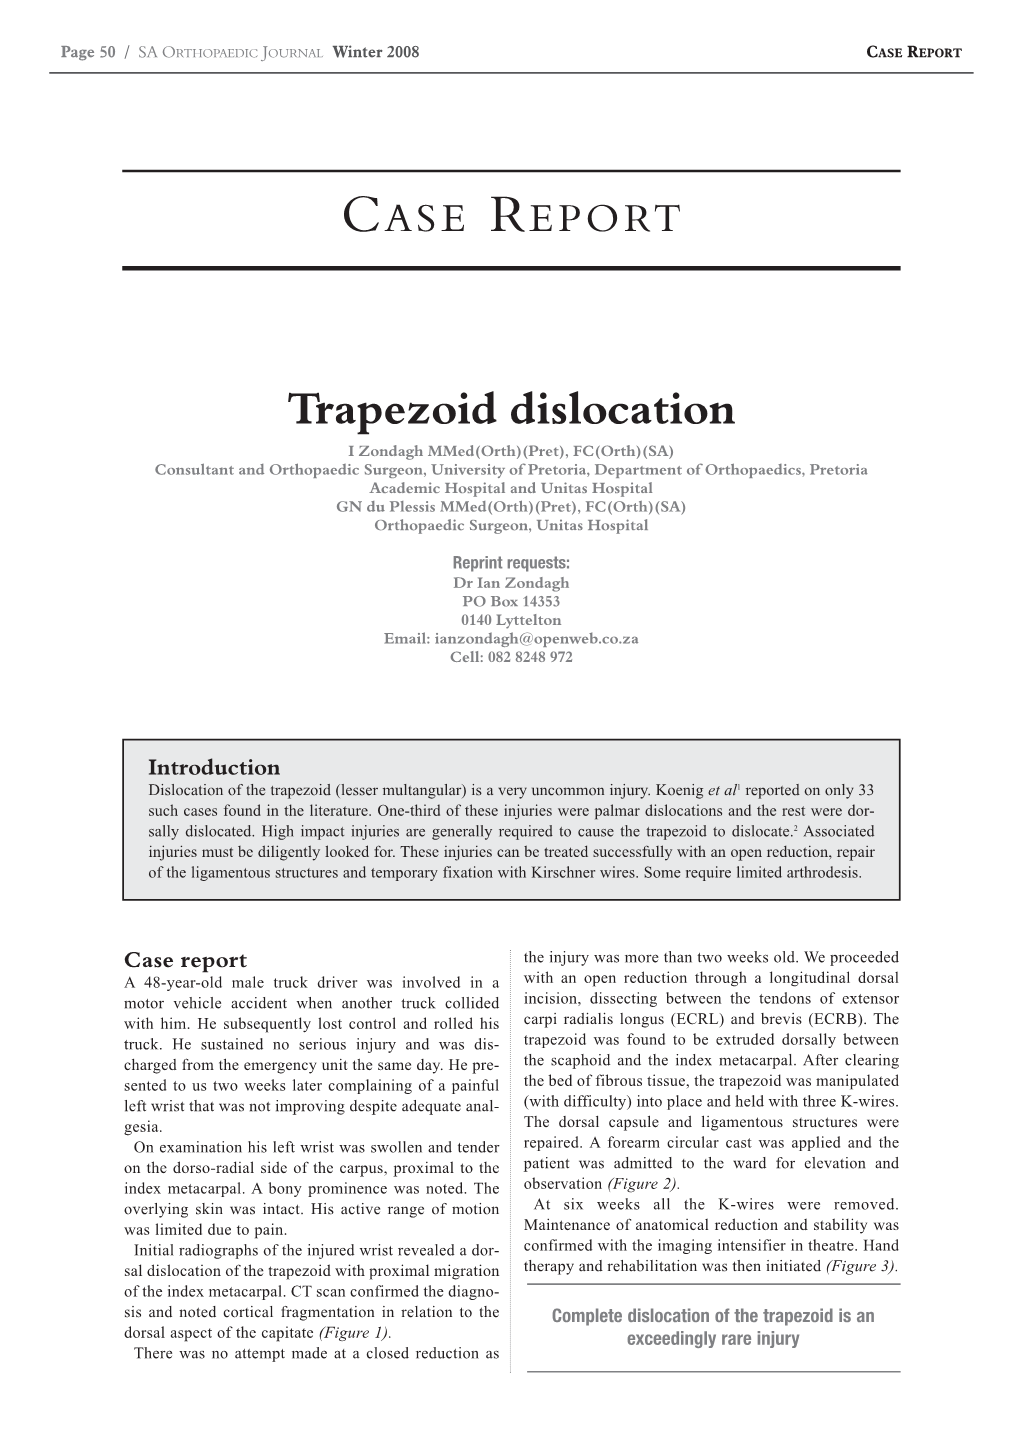 Trapezoid Dislocation